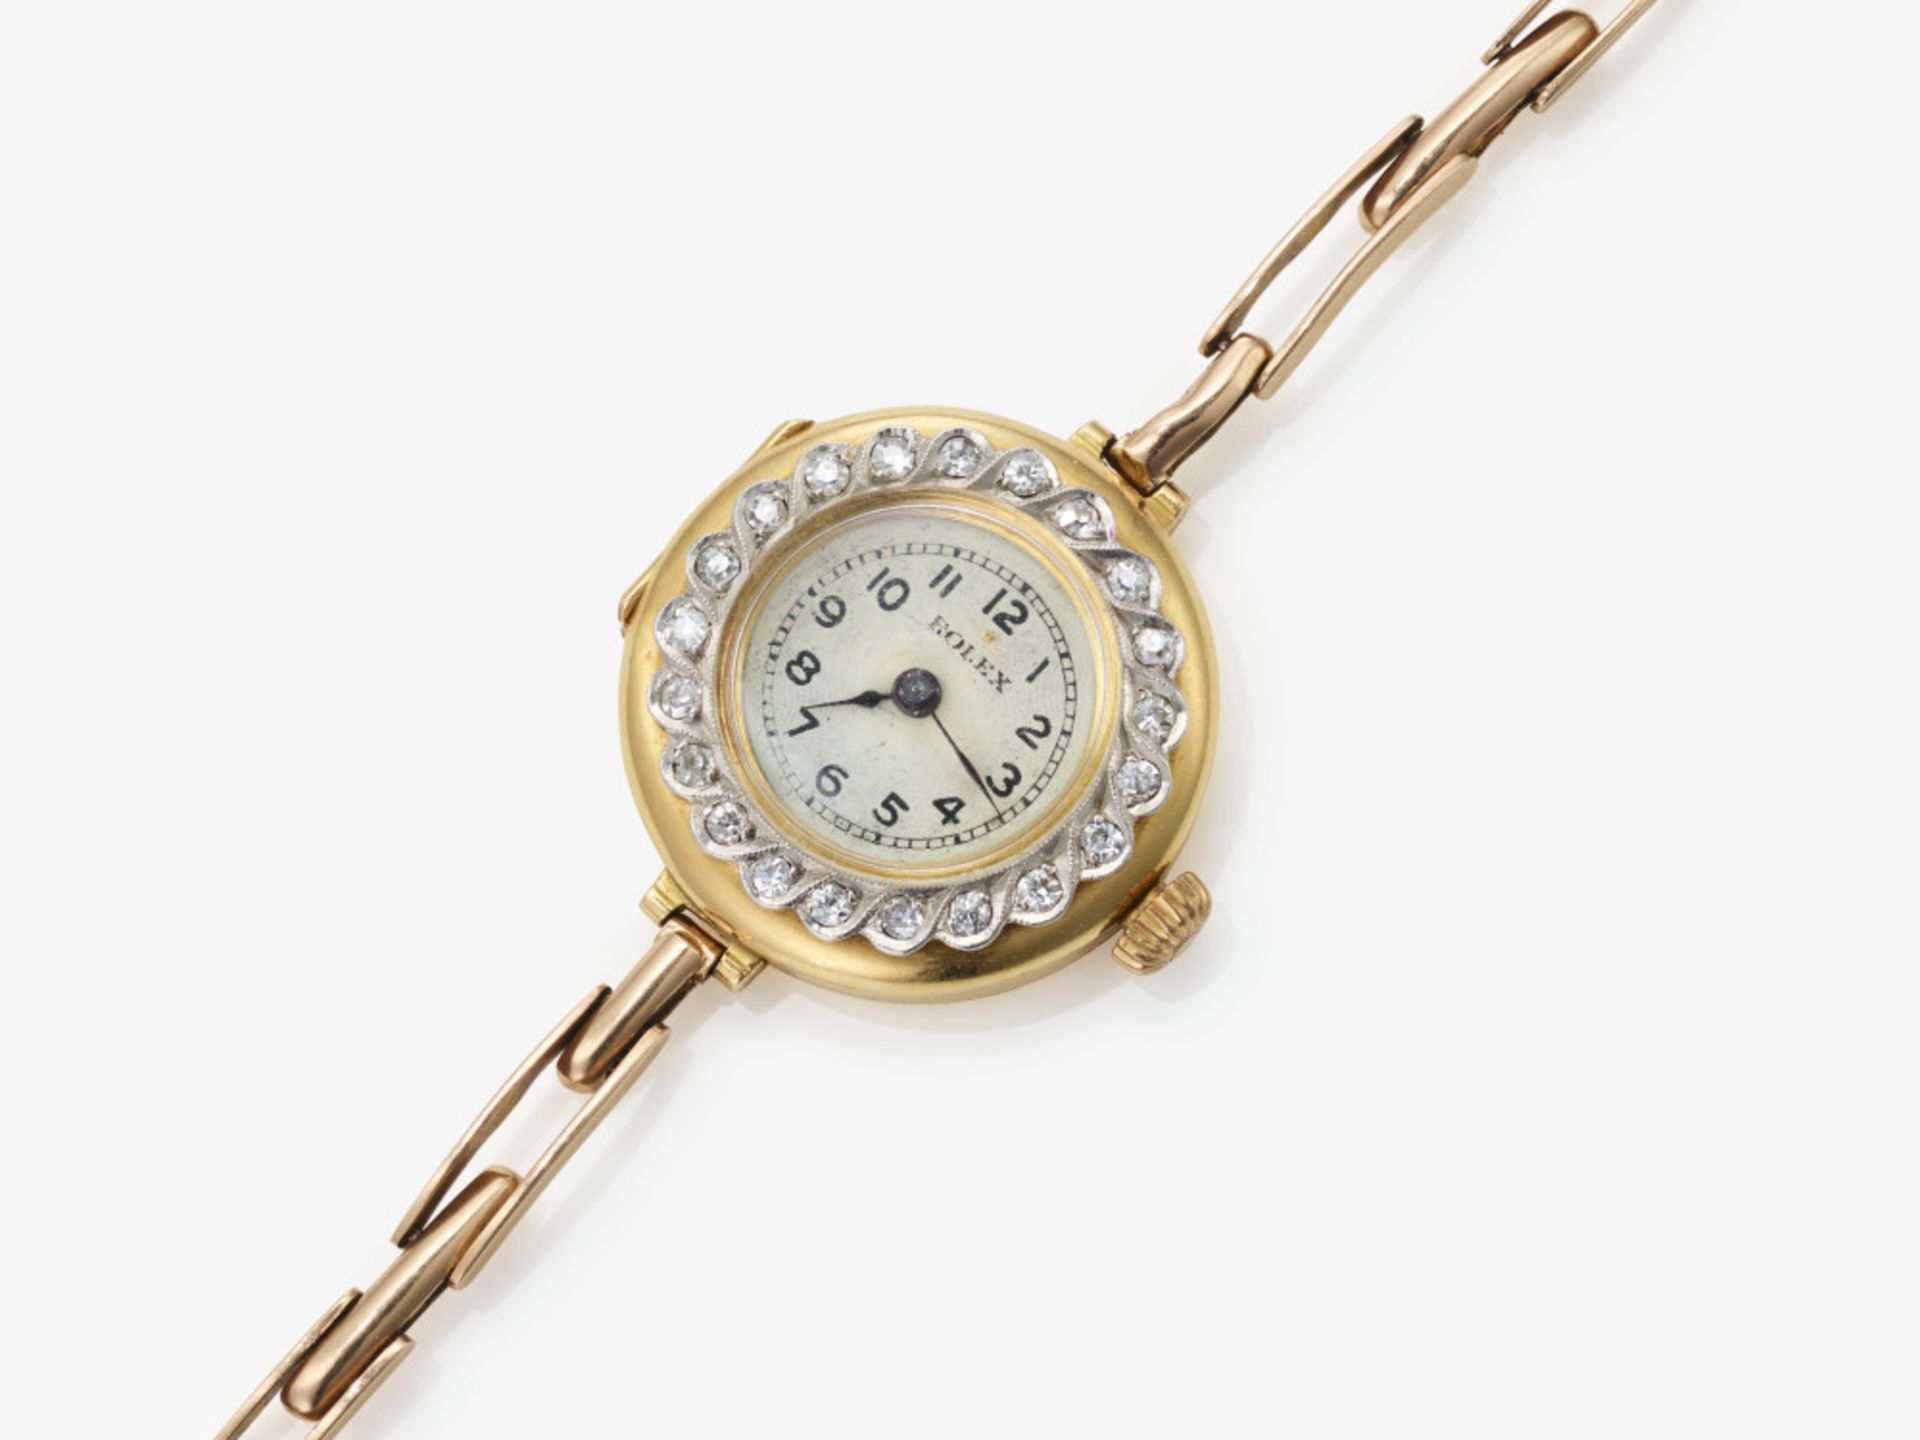 A ladies' wristwatch with diamonds - London, circa 1910, ROLEX 